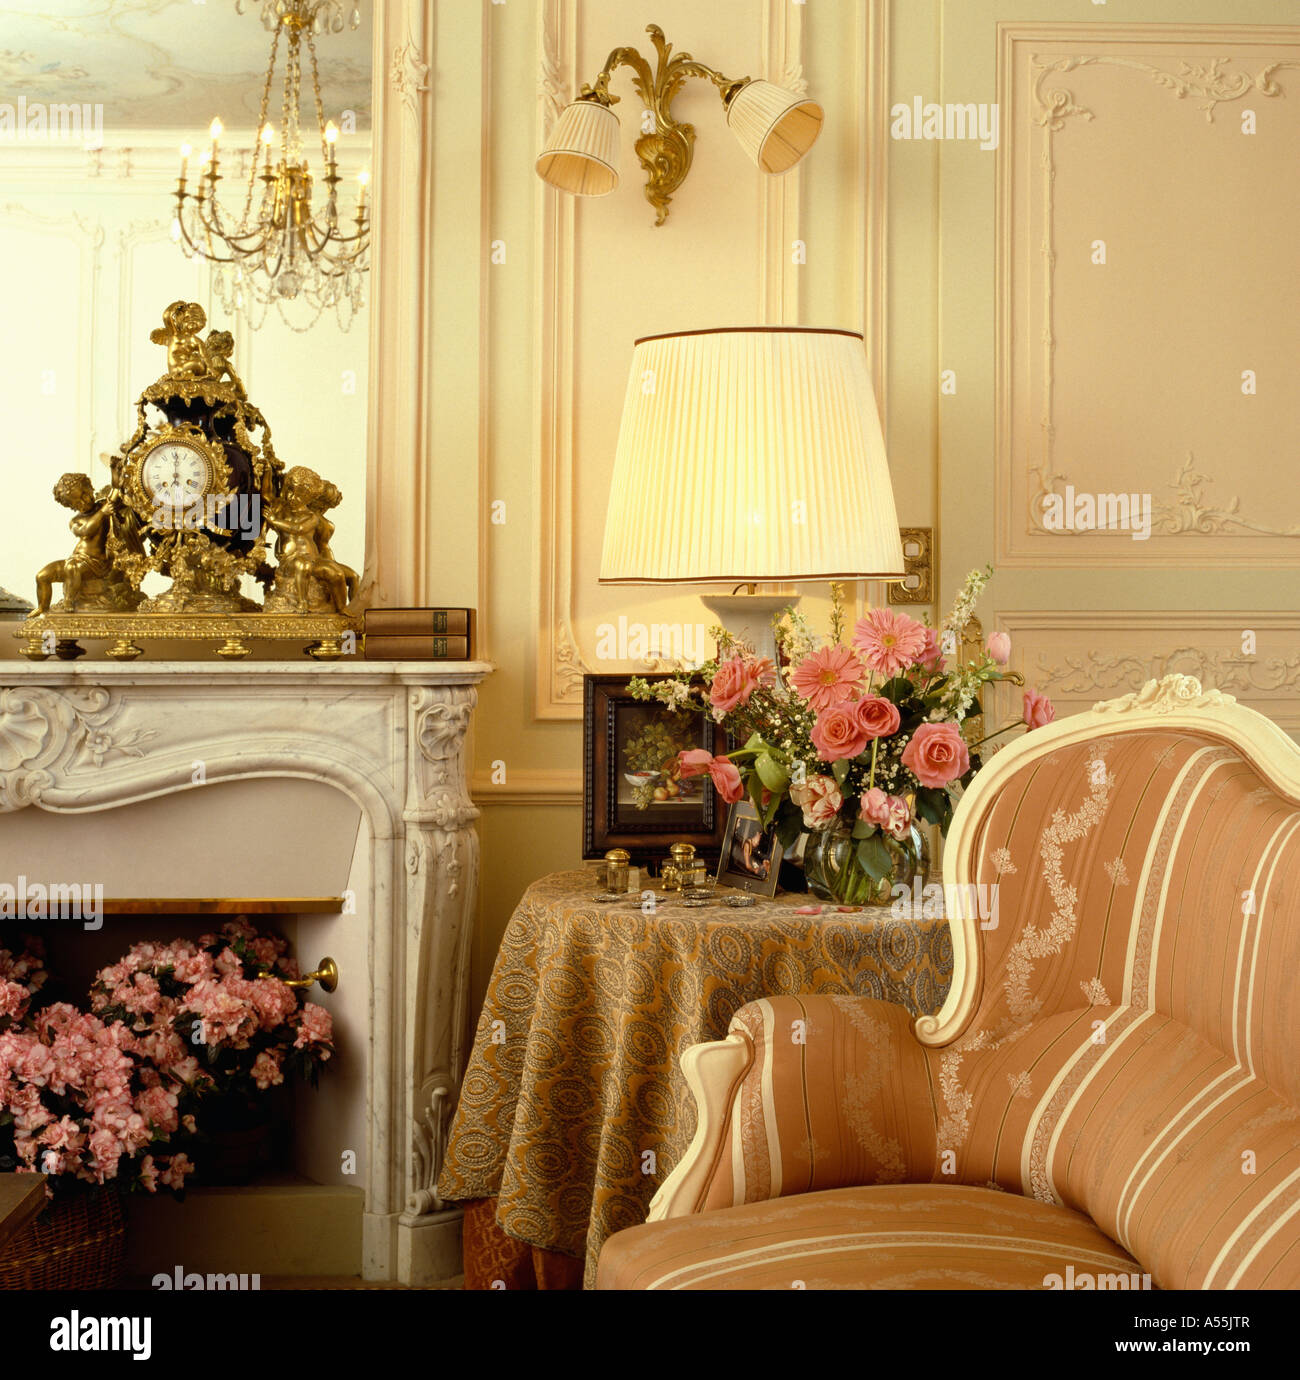 Chaise de style français de pêche et de table avec bande de tissu pêche voyant derrière la cheminée de marbre avec horloge baroque doré sur la cheminée Banque D'Images